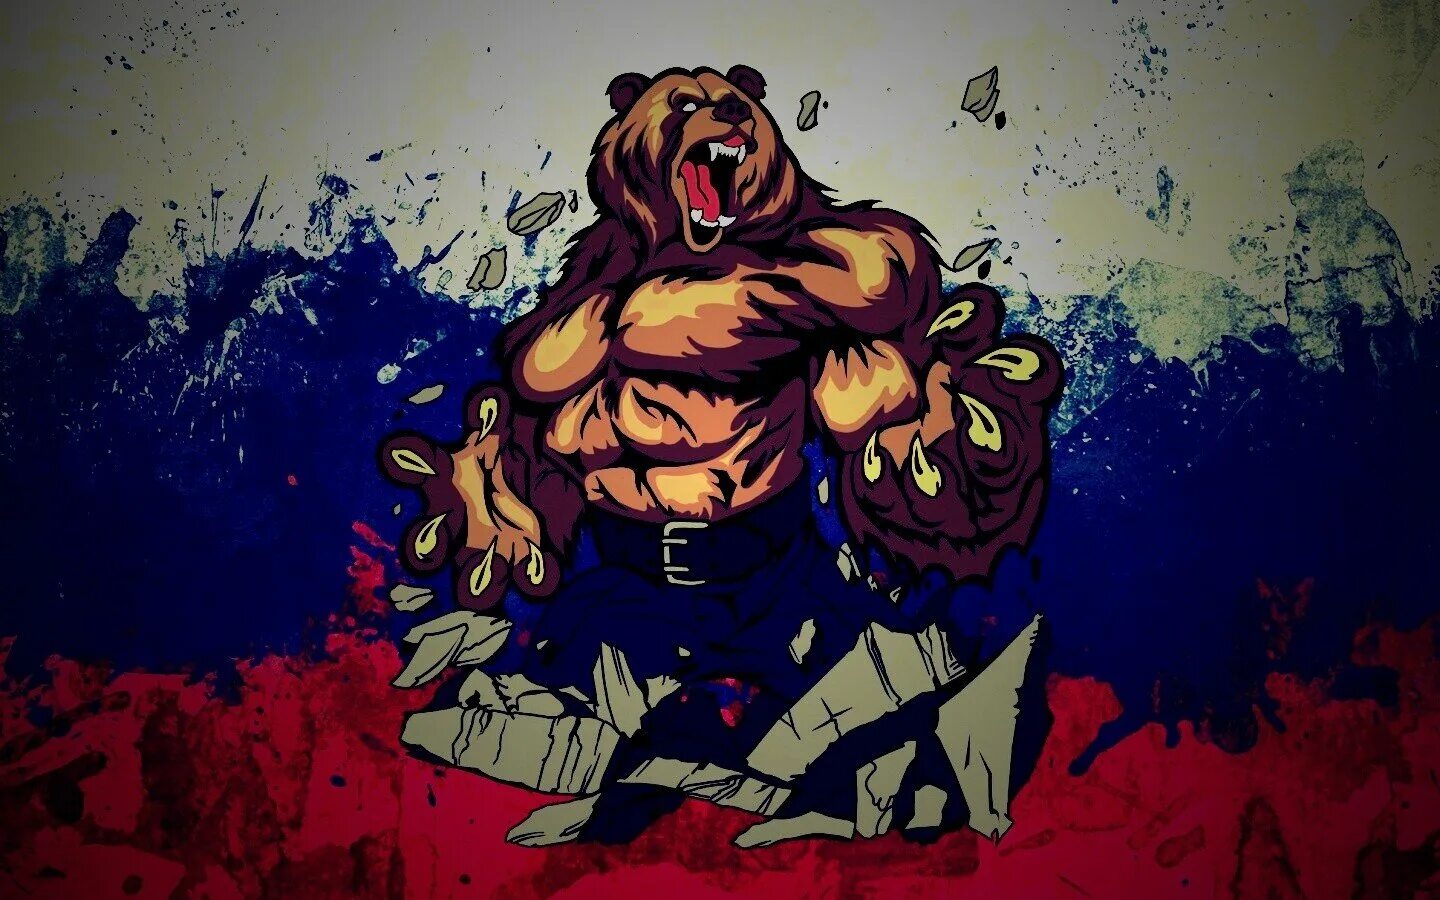 Обои на айфон русский. Русский медведь. Русский медведь картинка. Российский флаг с медведем. Русский медведь арт.